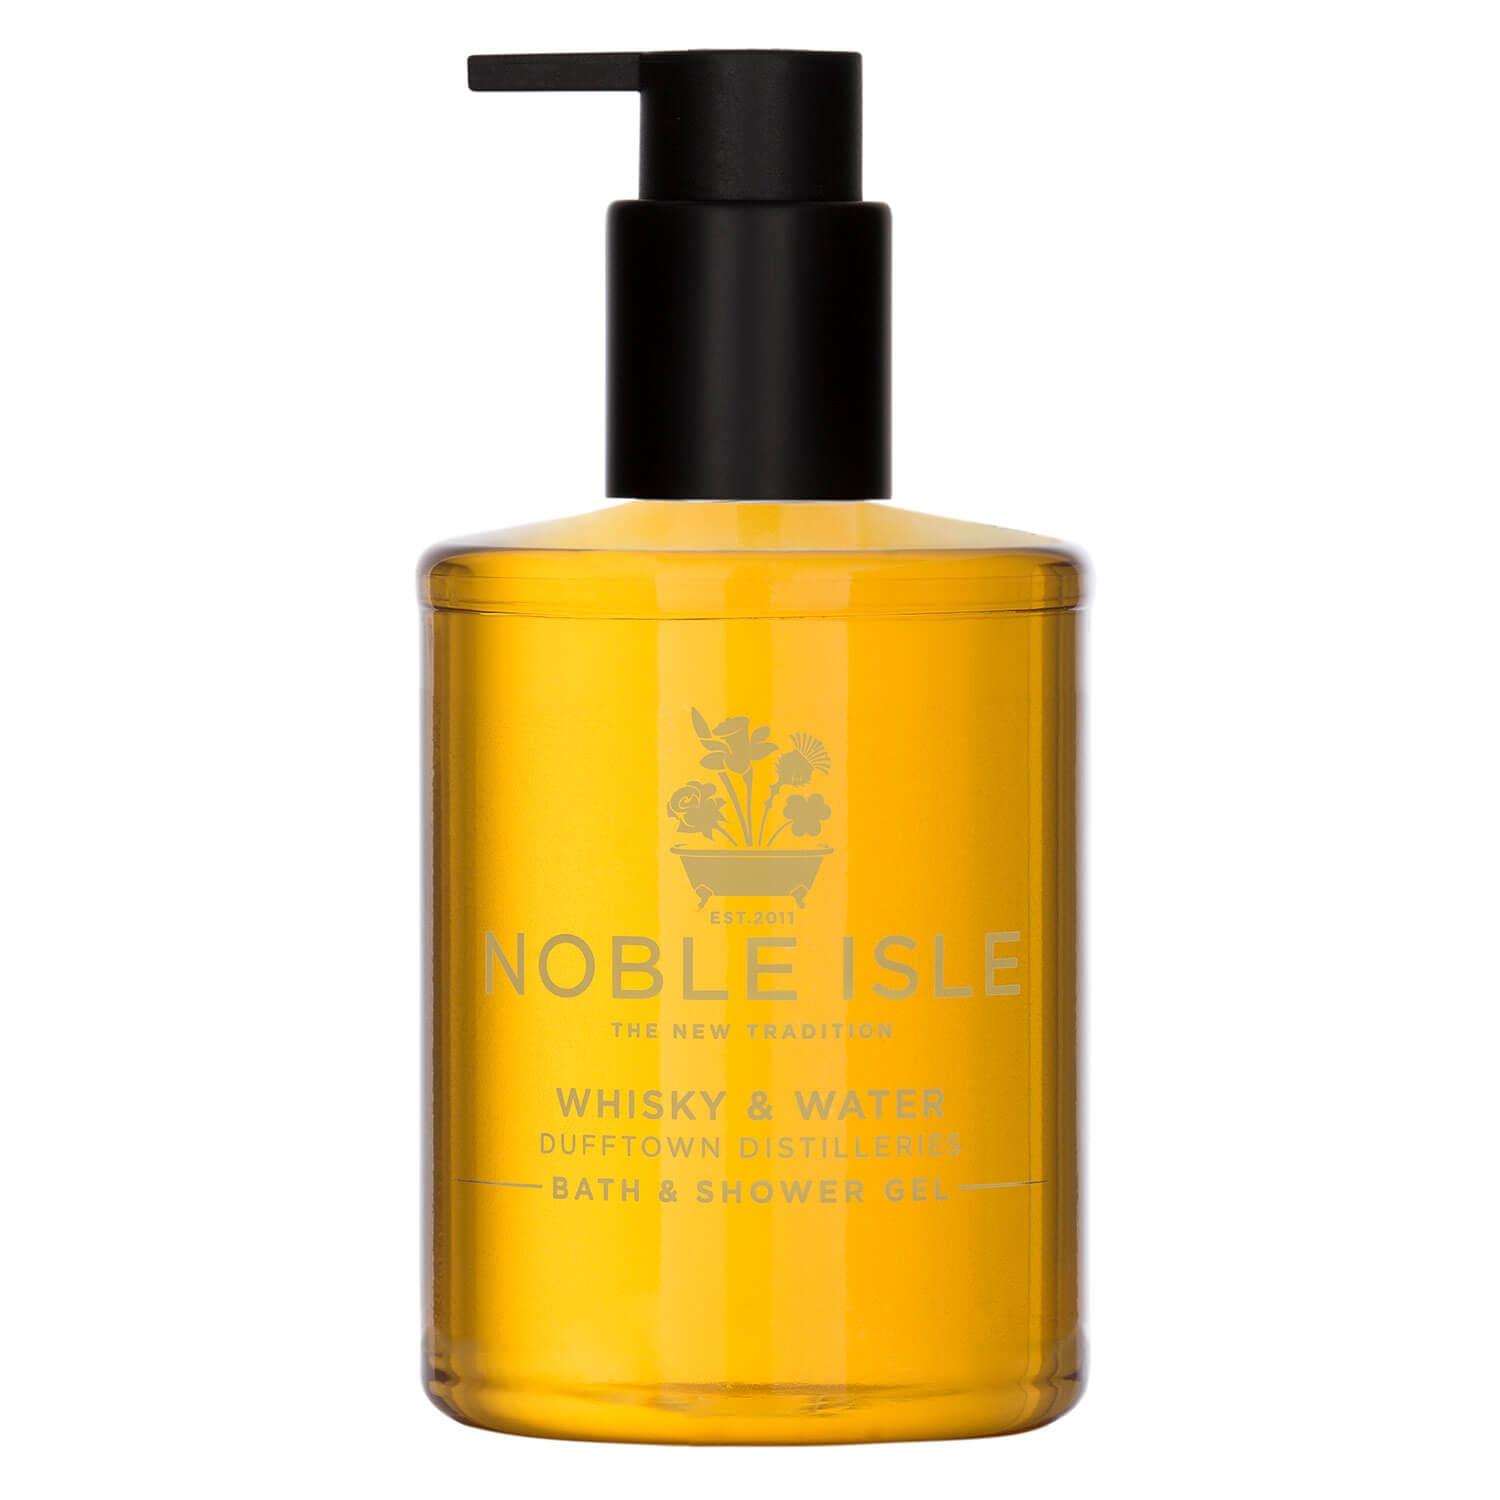 Produktbild von Noble Isle - Whisky & Water Bath & Shower Gel